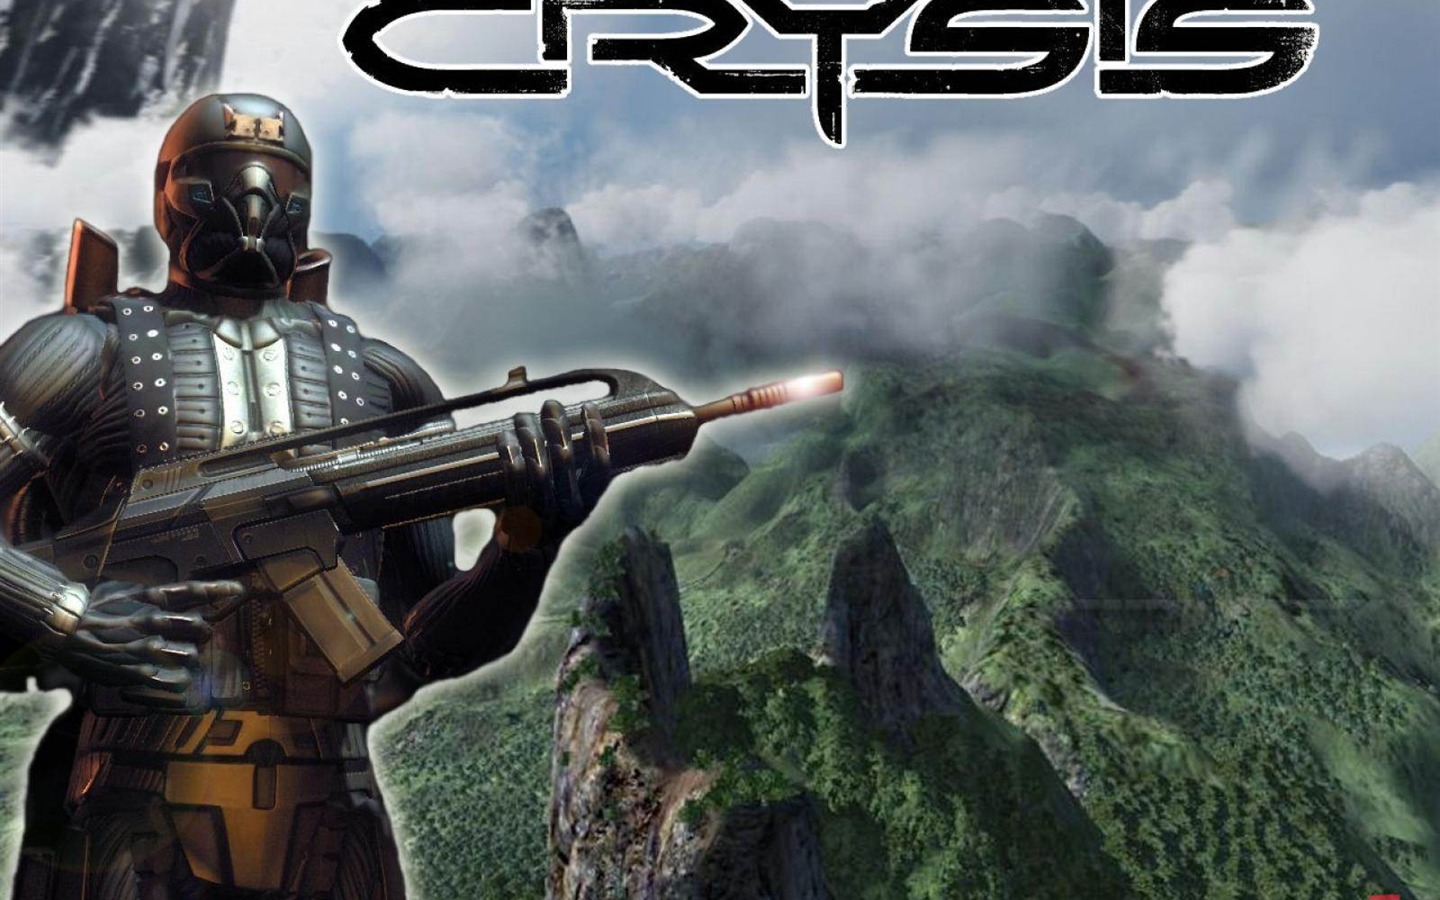  Crysisの壁紙(2) #16 - 1440x900